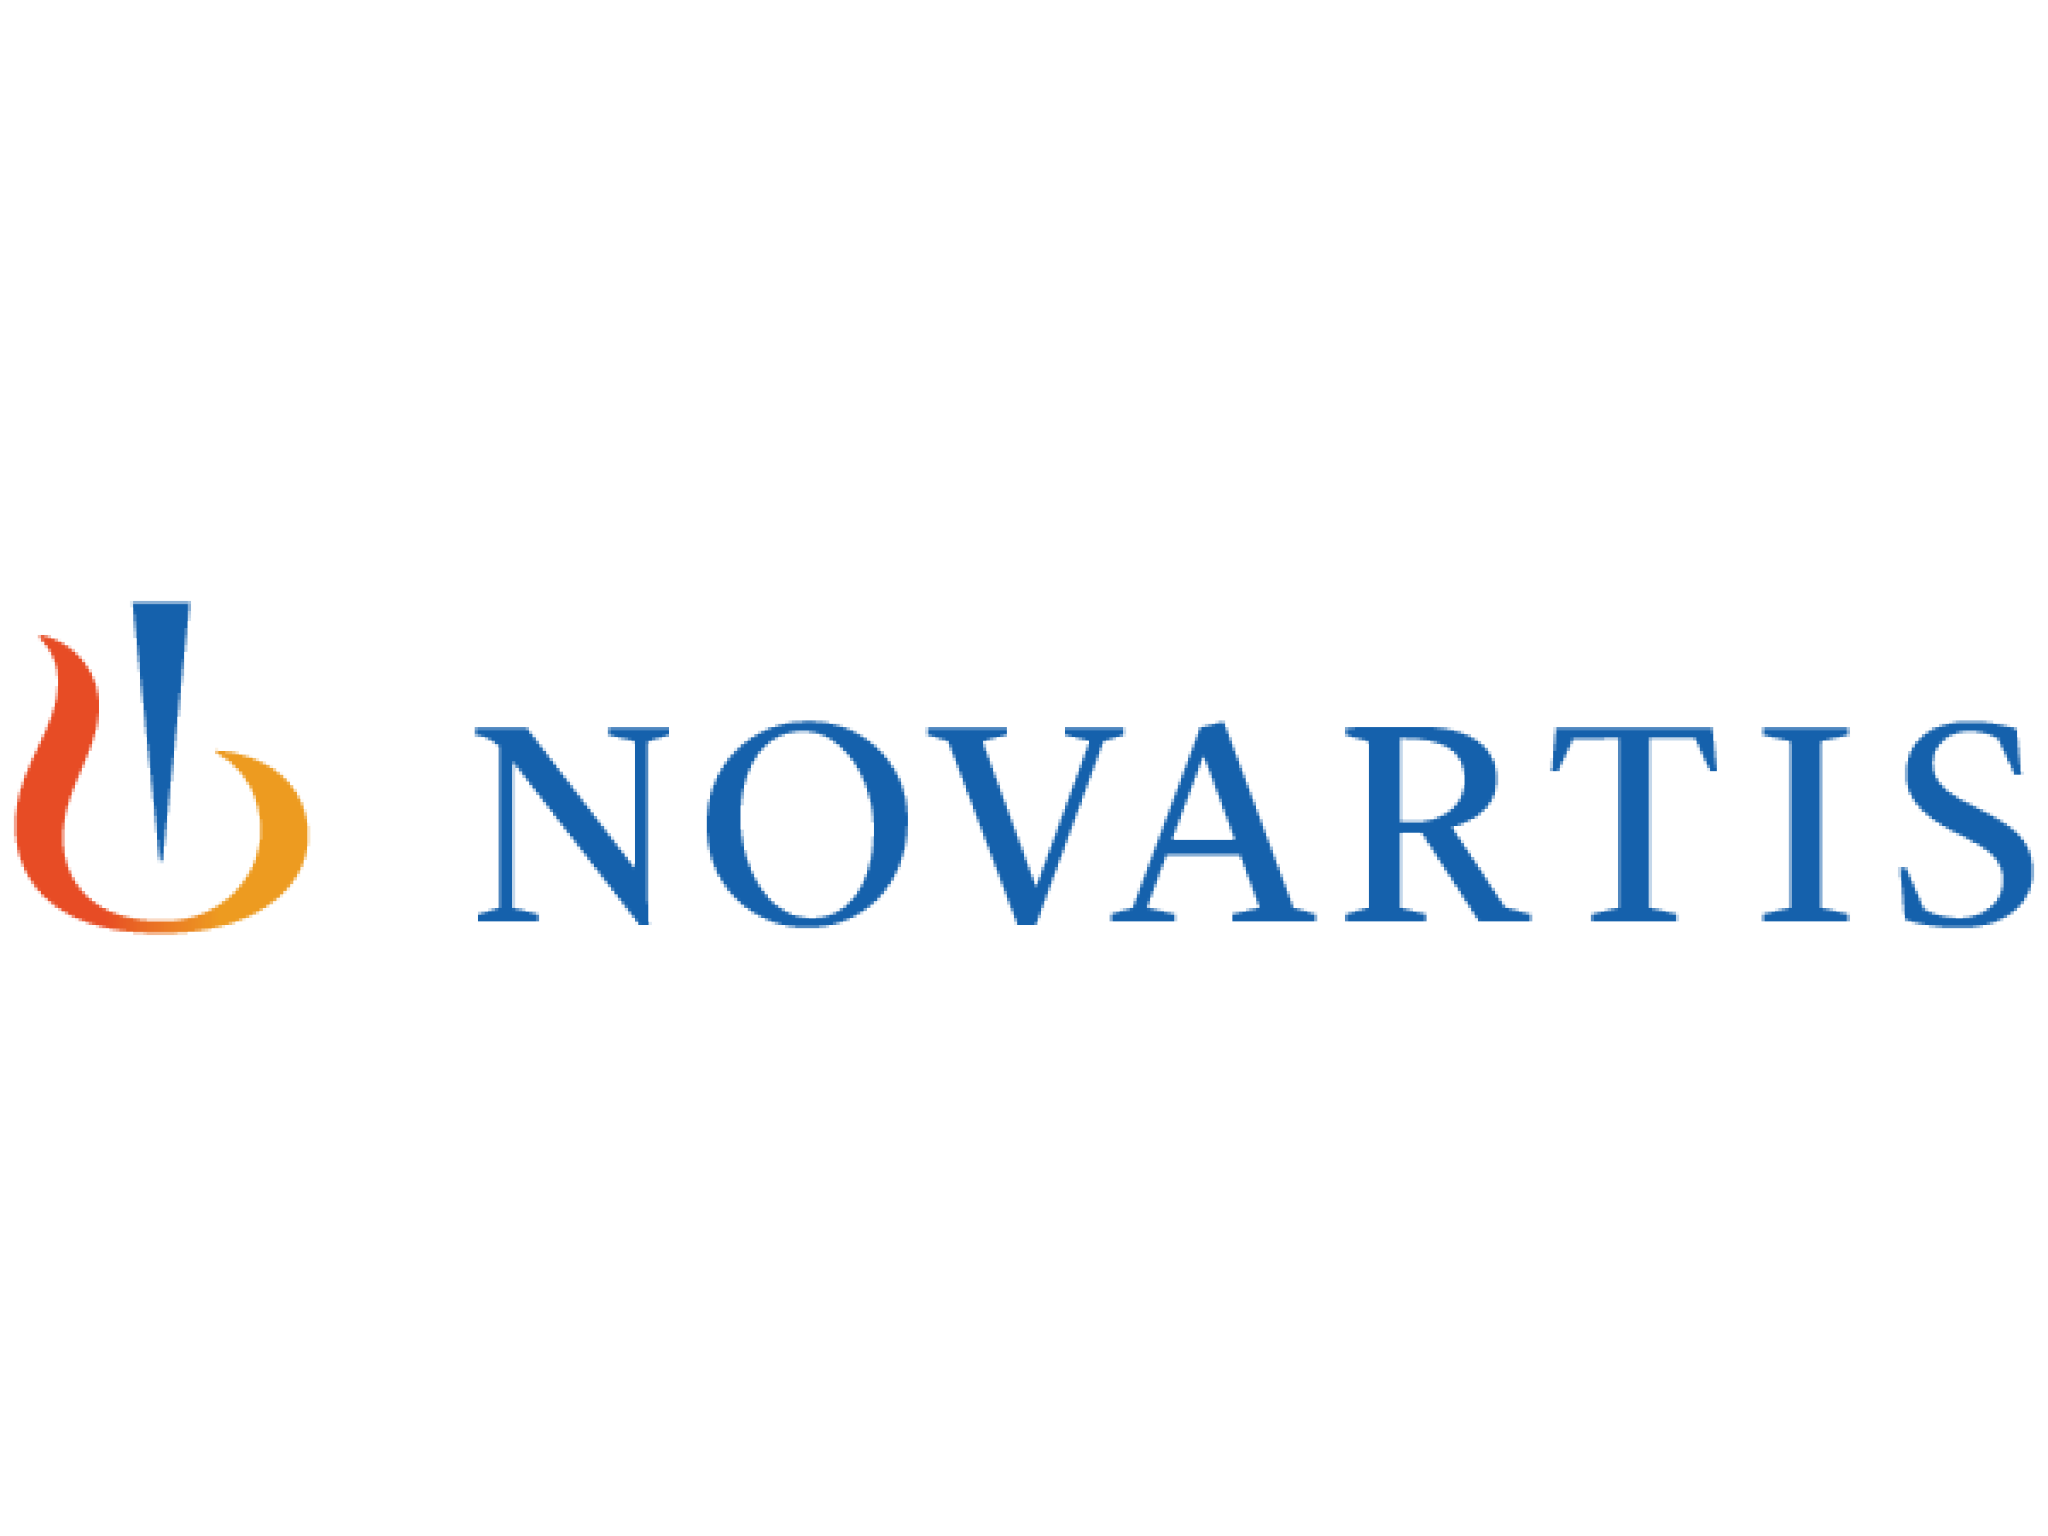  novartis-settles-antitrust-cases-related-to-generic-entry-for-hypertension-drug 